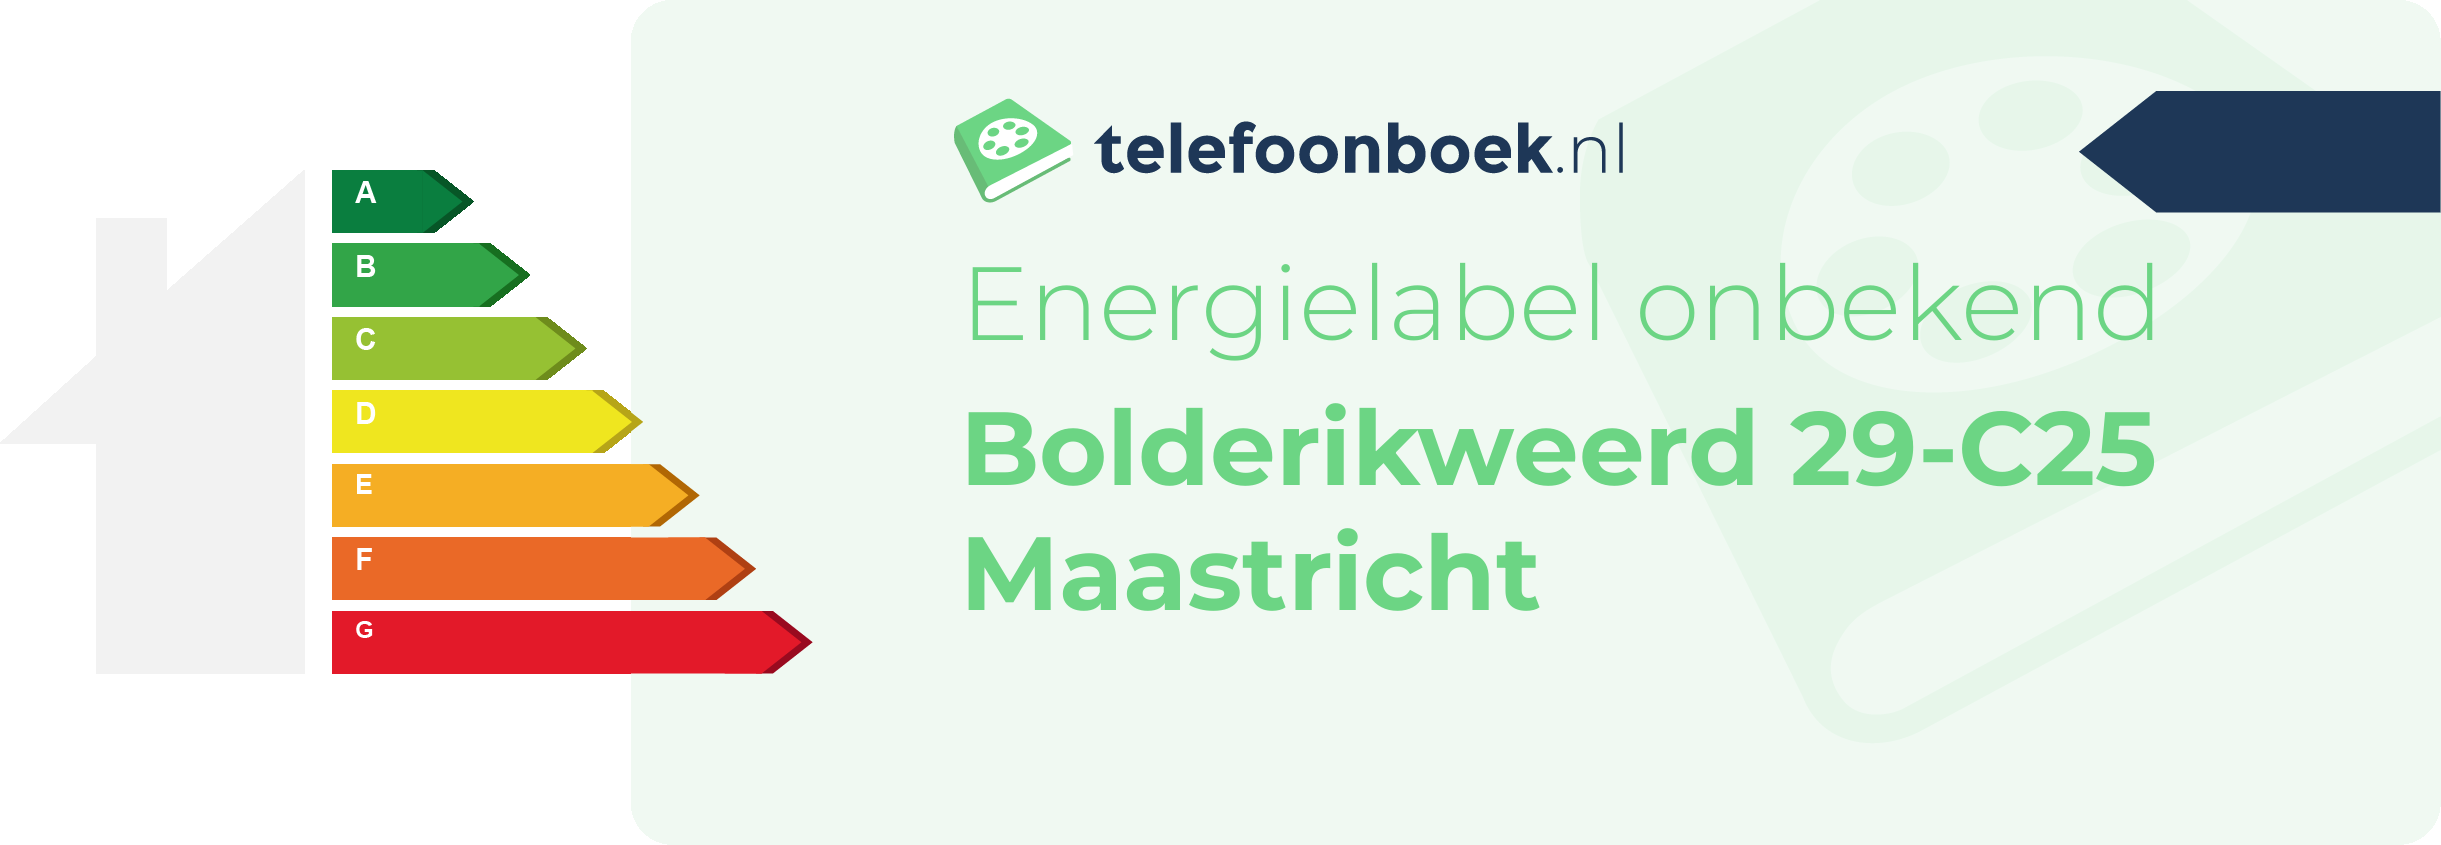 Energielabel Bolderikweerd 29-C25 Maastricht